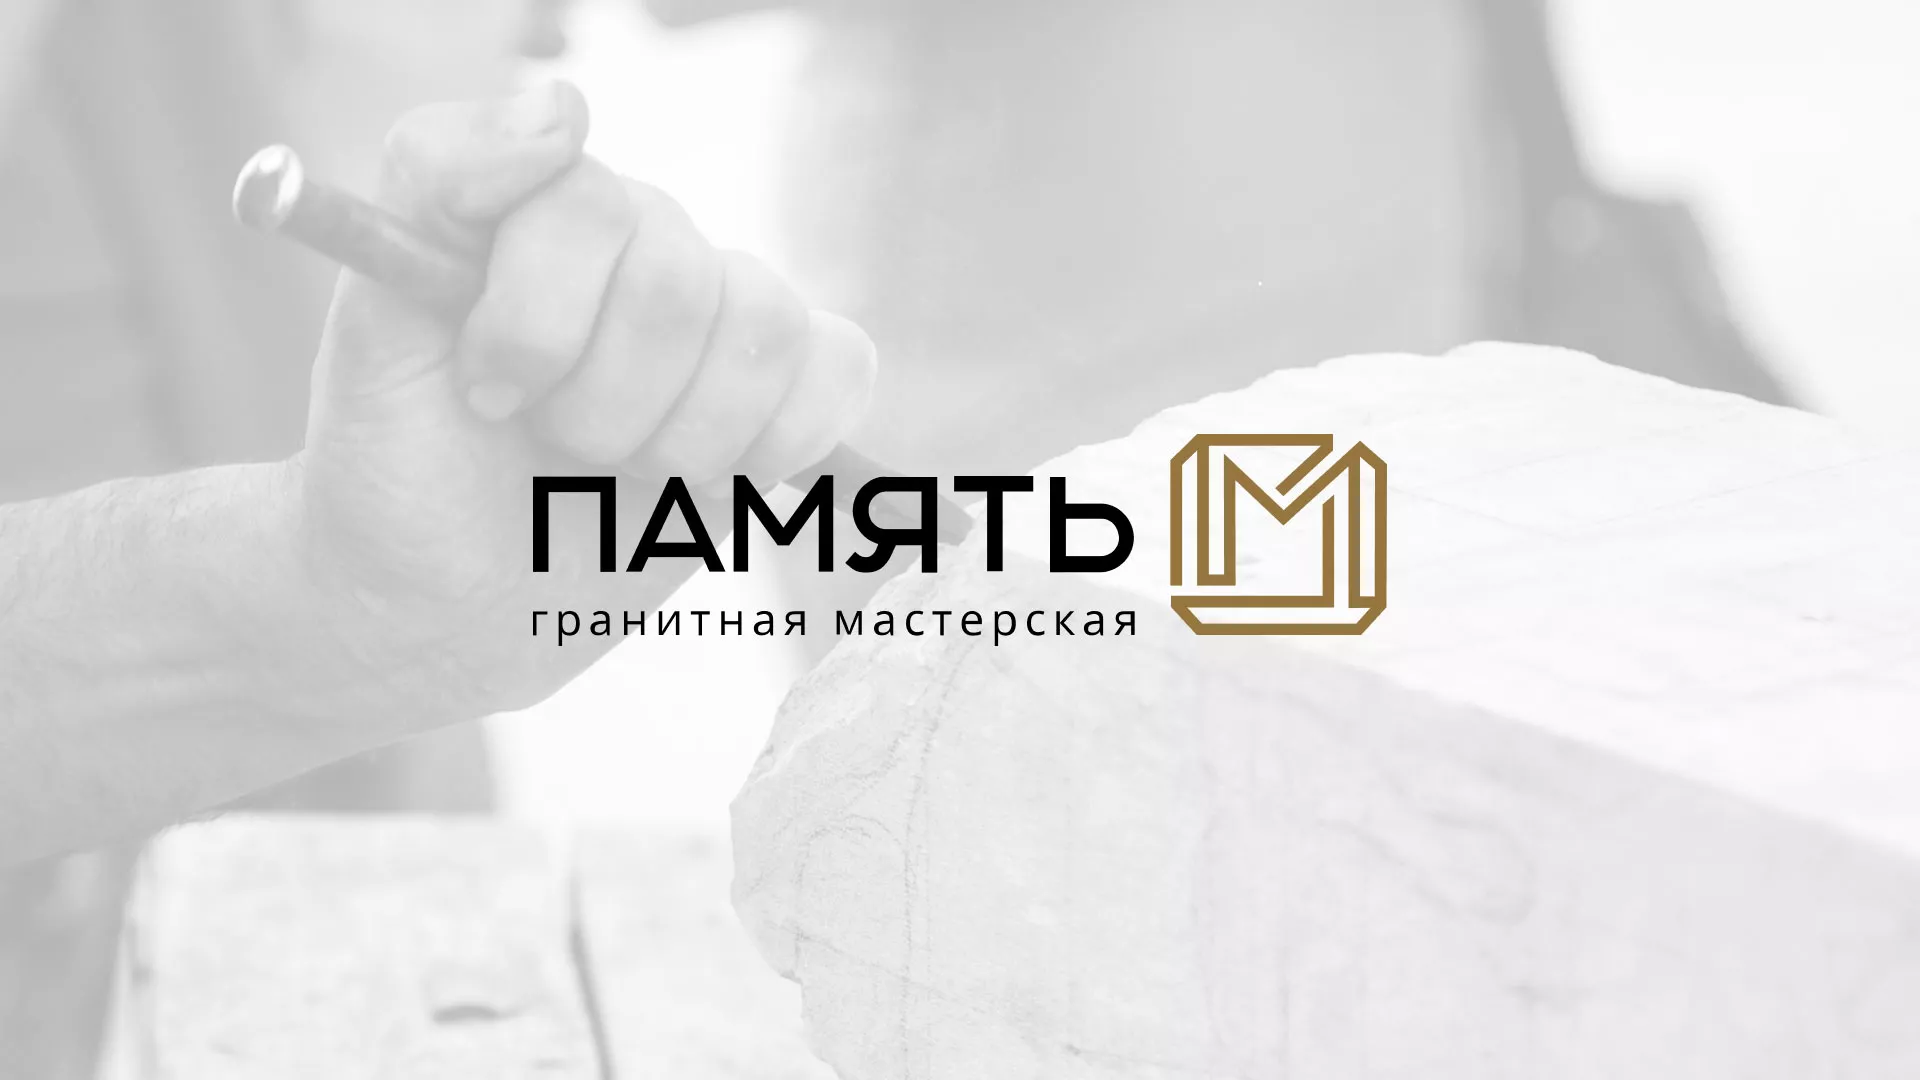 Разработка логотипа и сайта компании «Память-М» в Каргополе